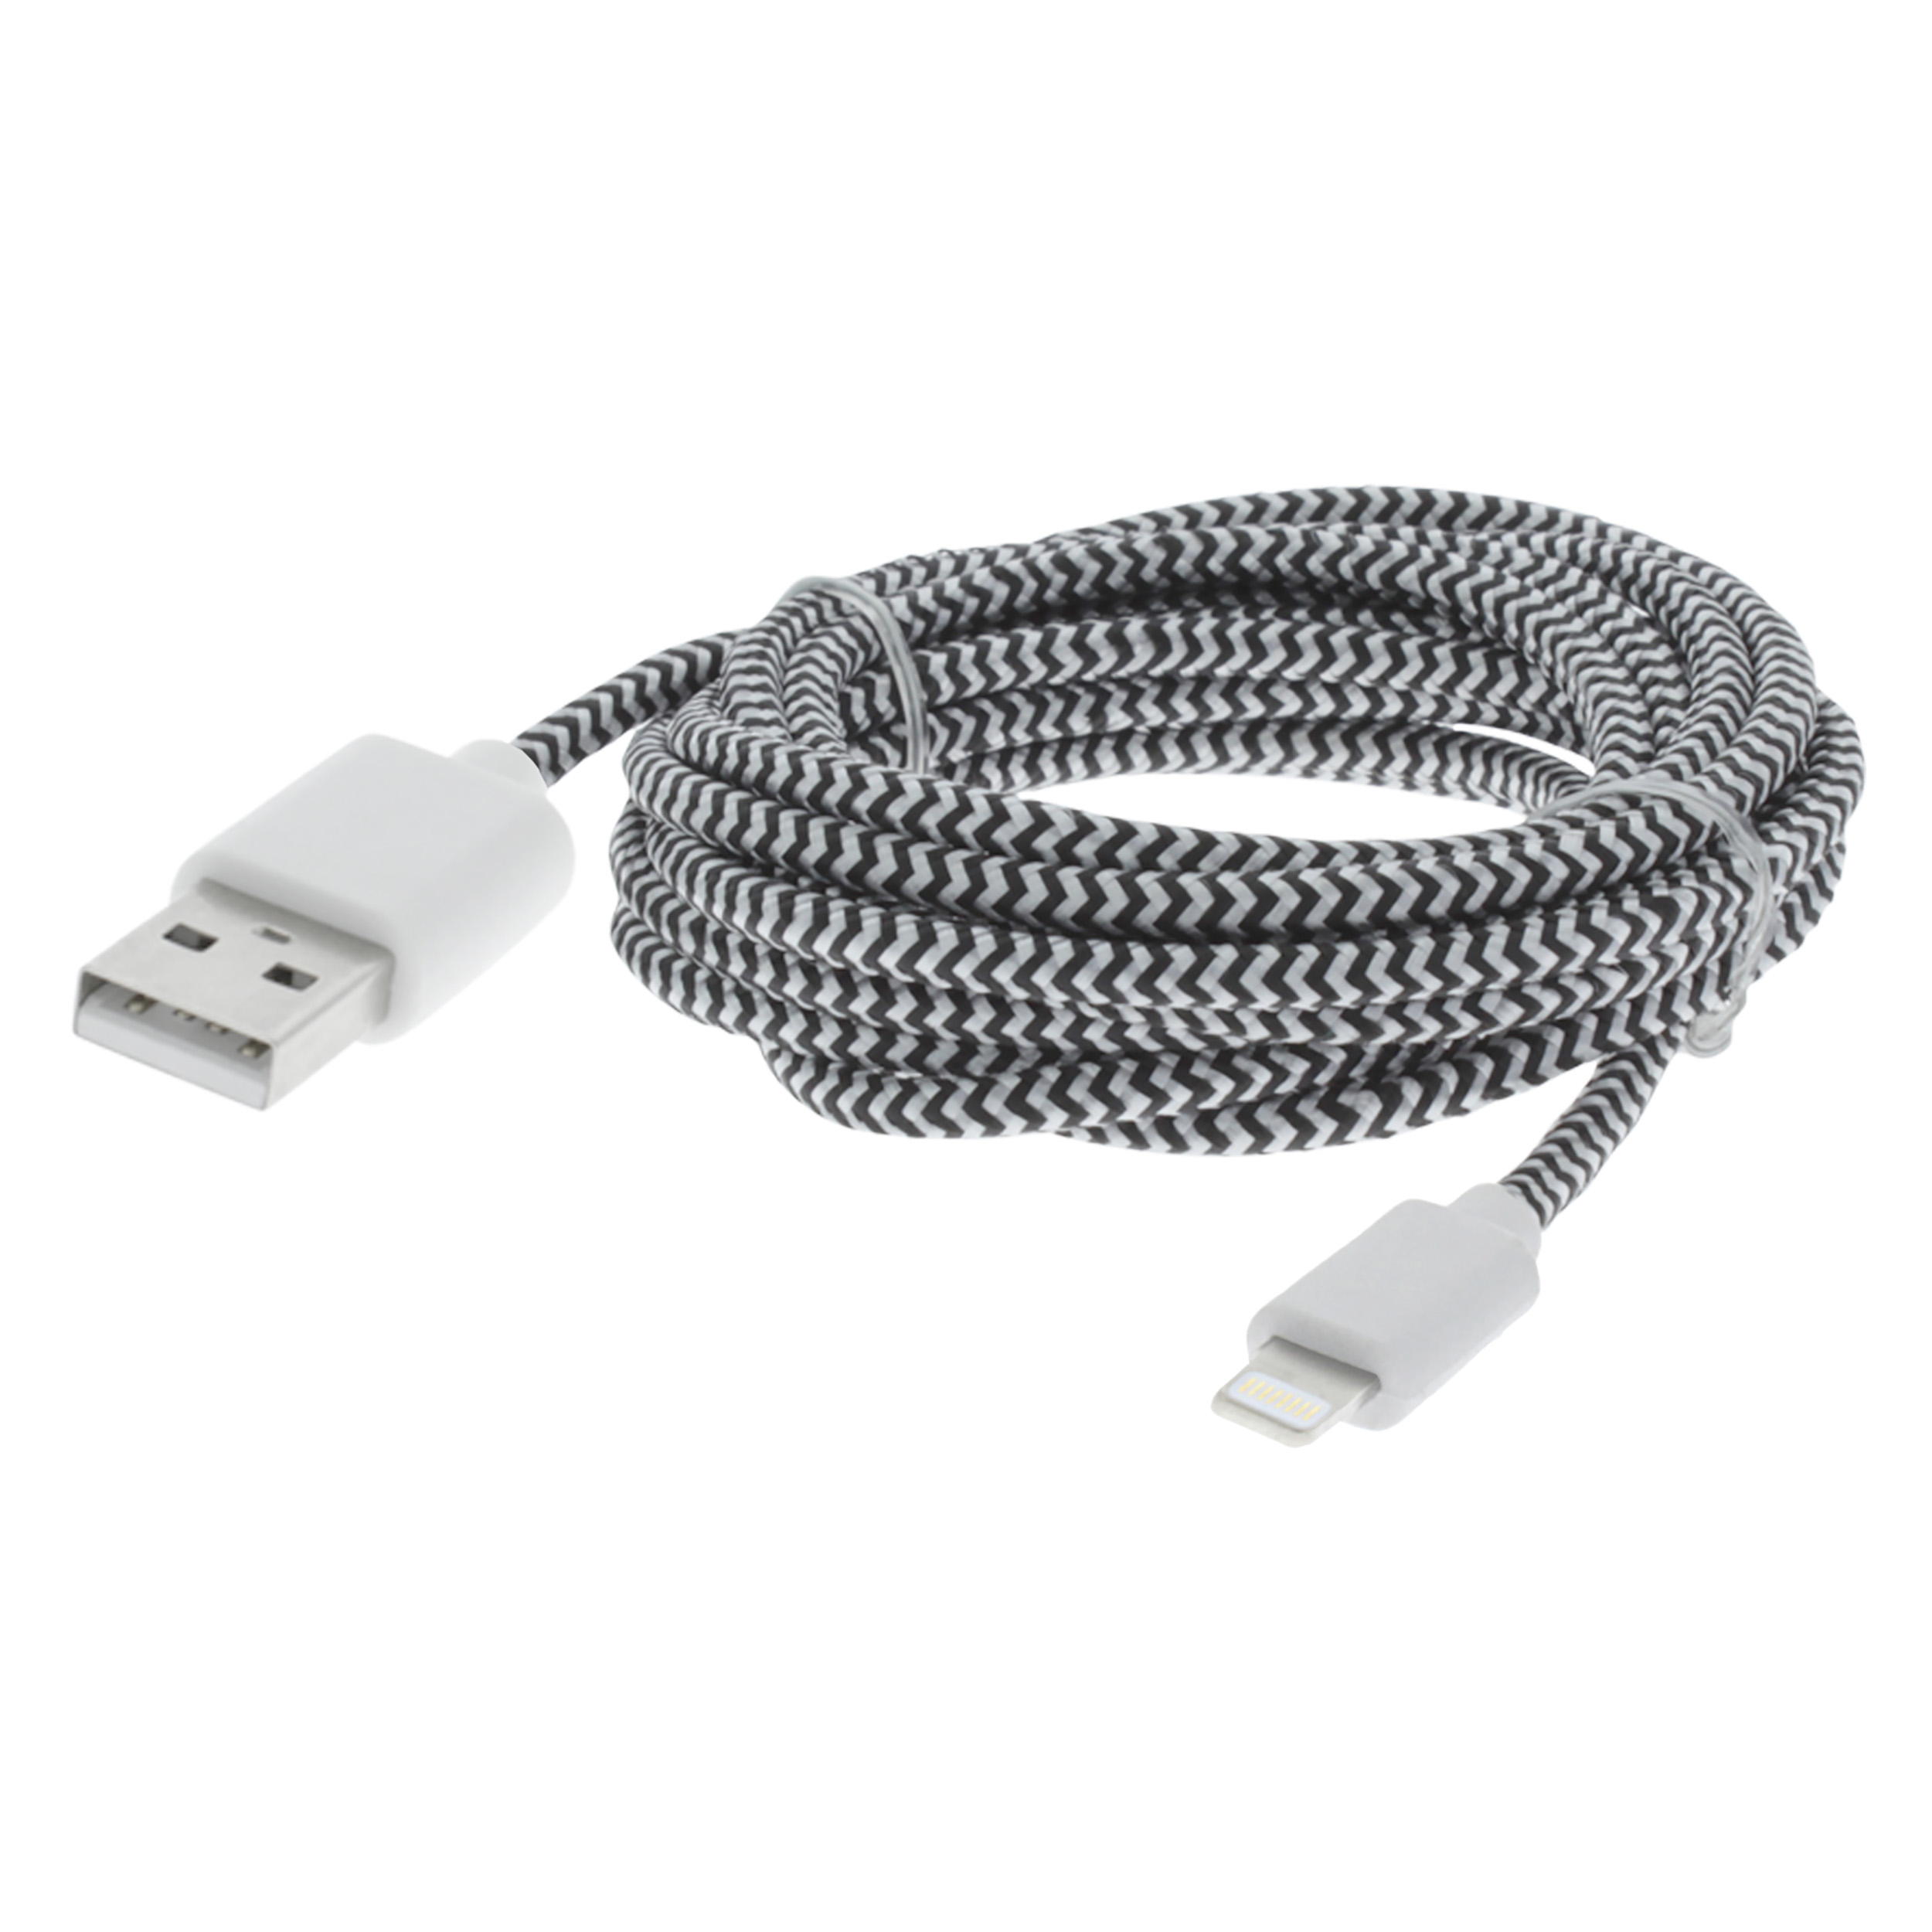 00.137.03 Q-Link  datakabel USB - iPhone - 2 m - zwart/wit